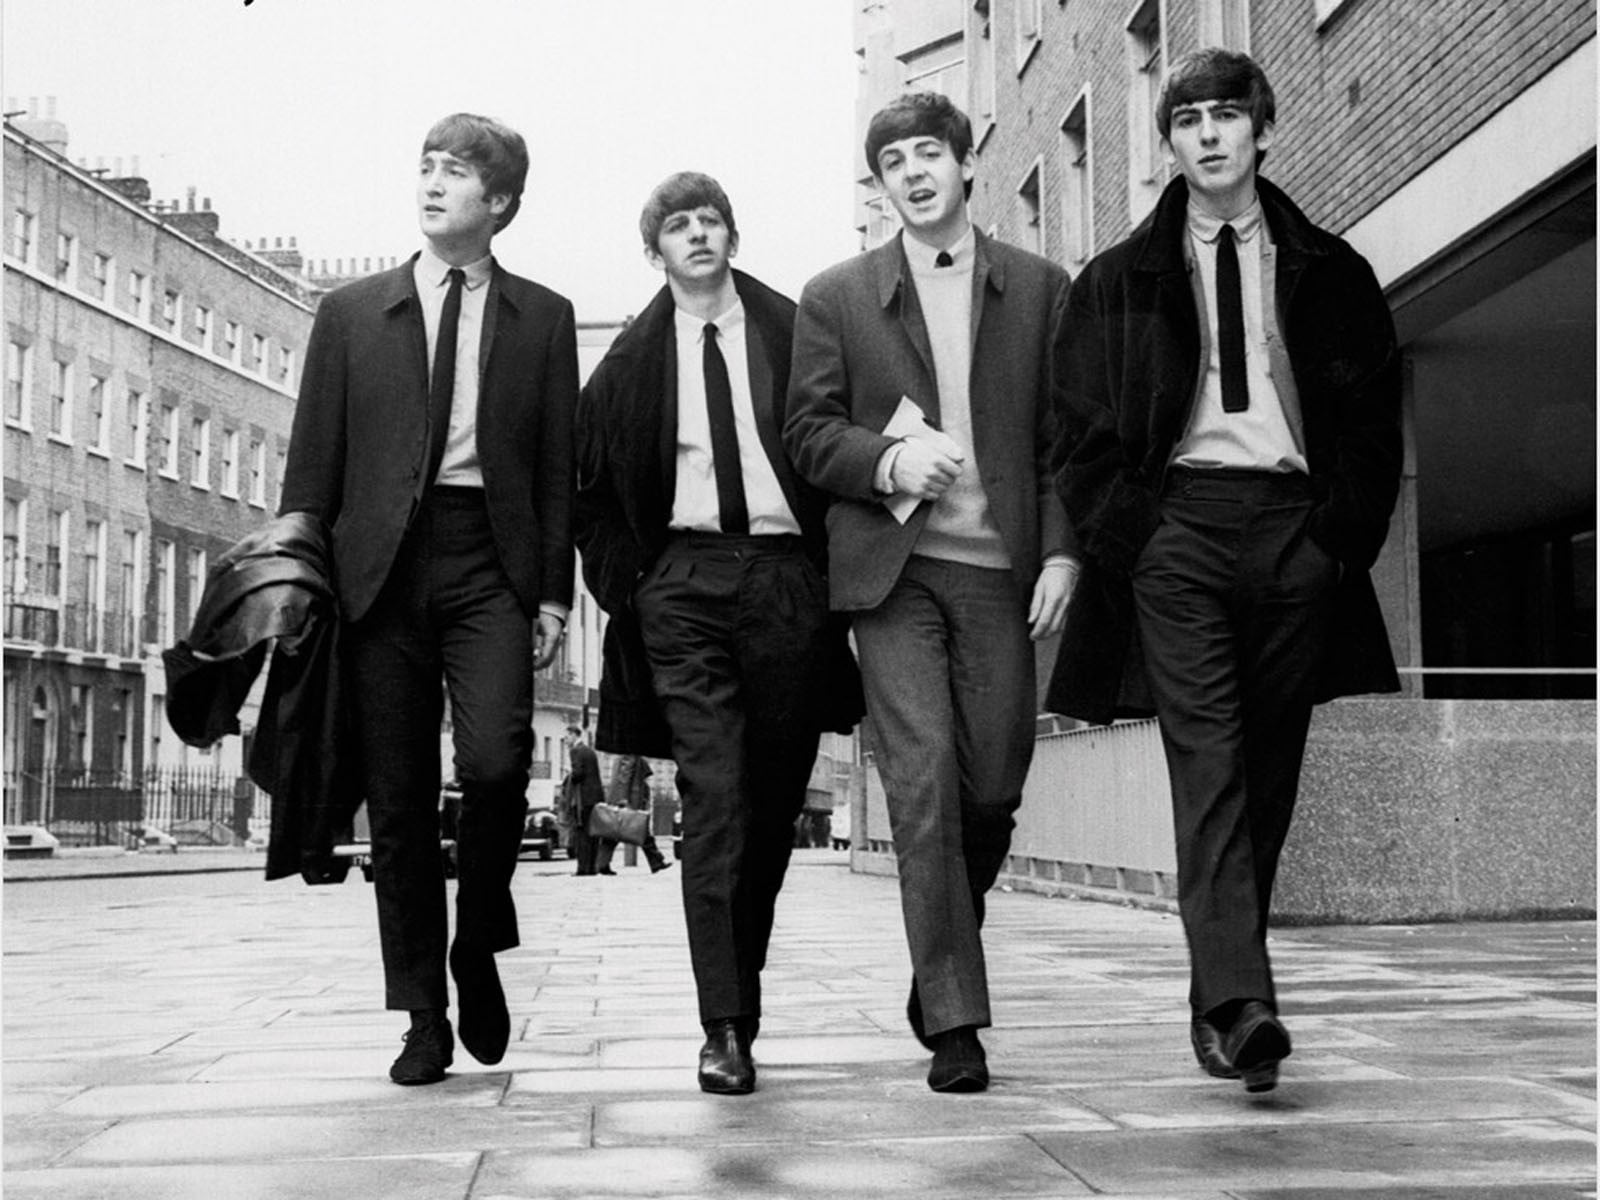 The Beatles, monochrome, men, musician, full length, well-dressed